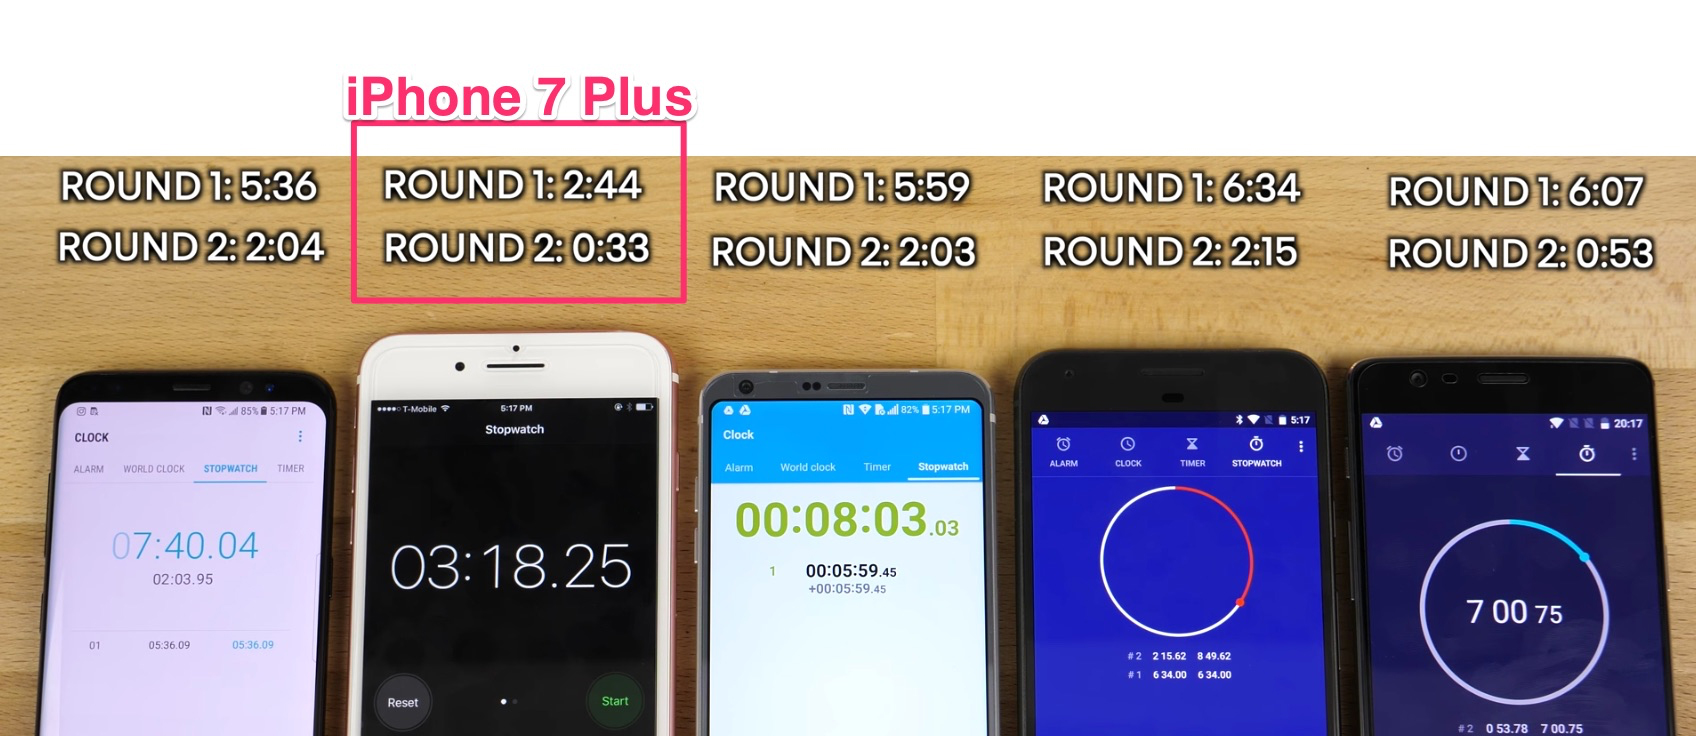 Resultados comparación de velocidad entre iPhone 7 Plus, Galaxy S8, LG G6, Pixel y OnePlus 3T